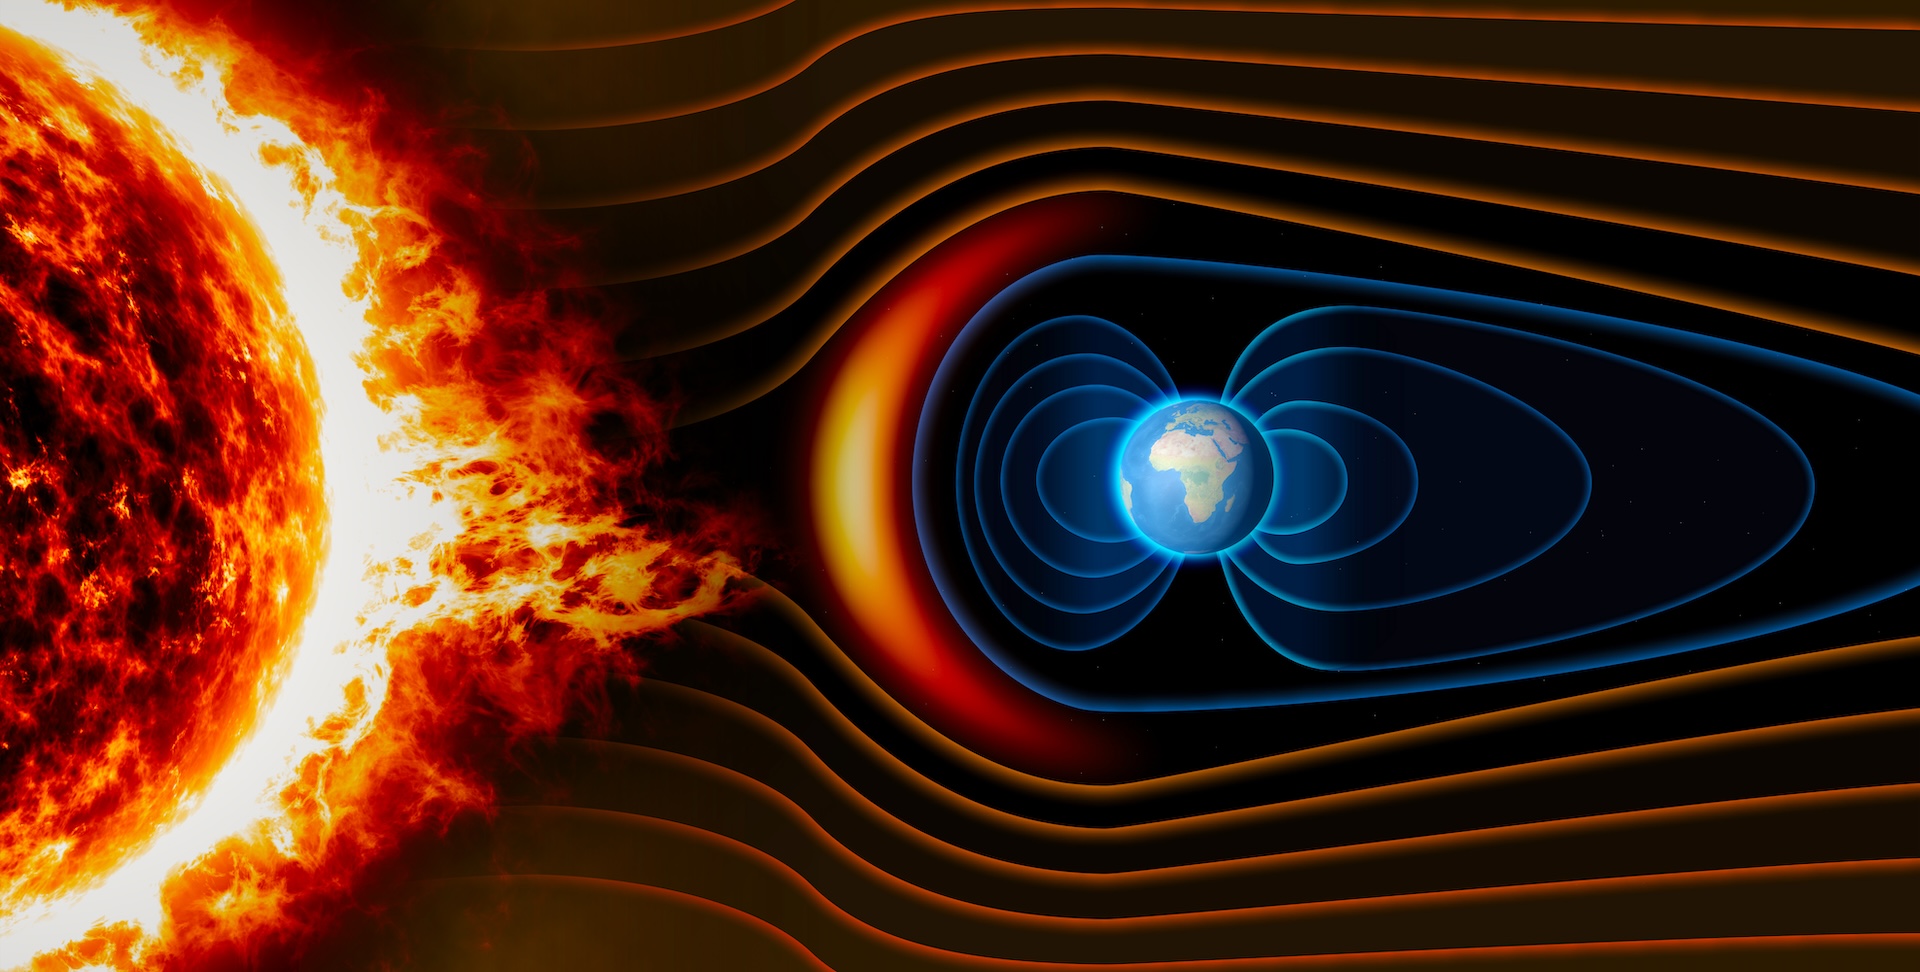 Иллюстрация огненного Солнца и Земли с солнечным ветром, вращающимся вокруг магнитного поля Земли.